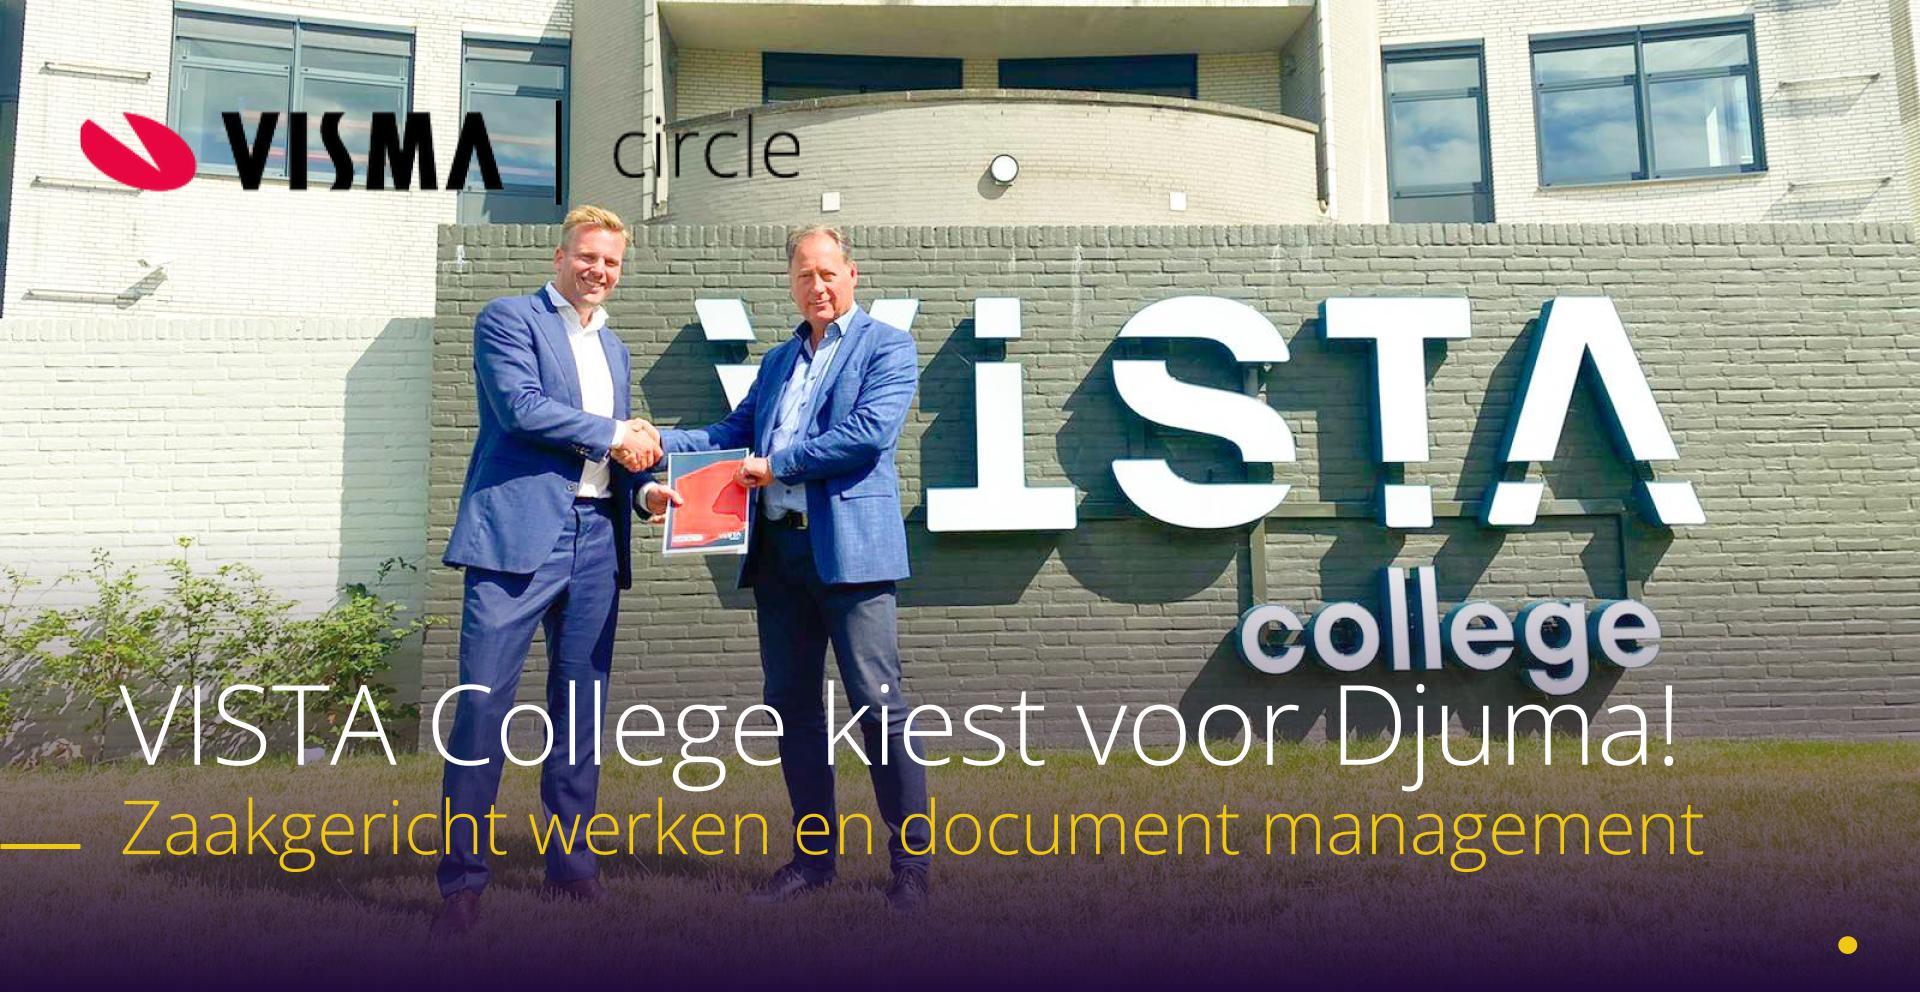 VISTA college kiest voor Djuma